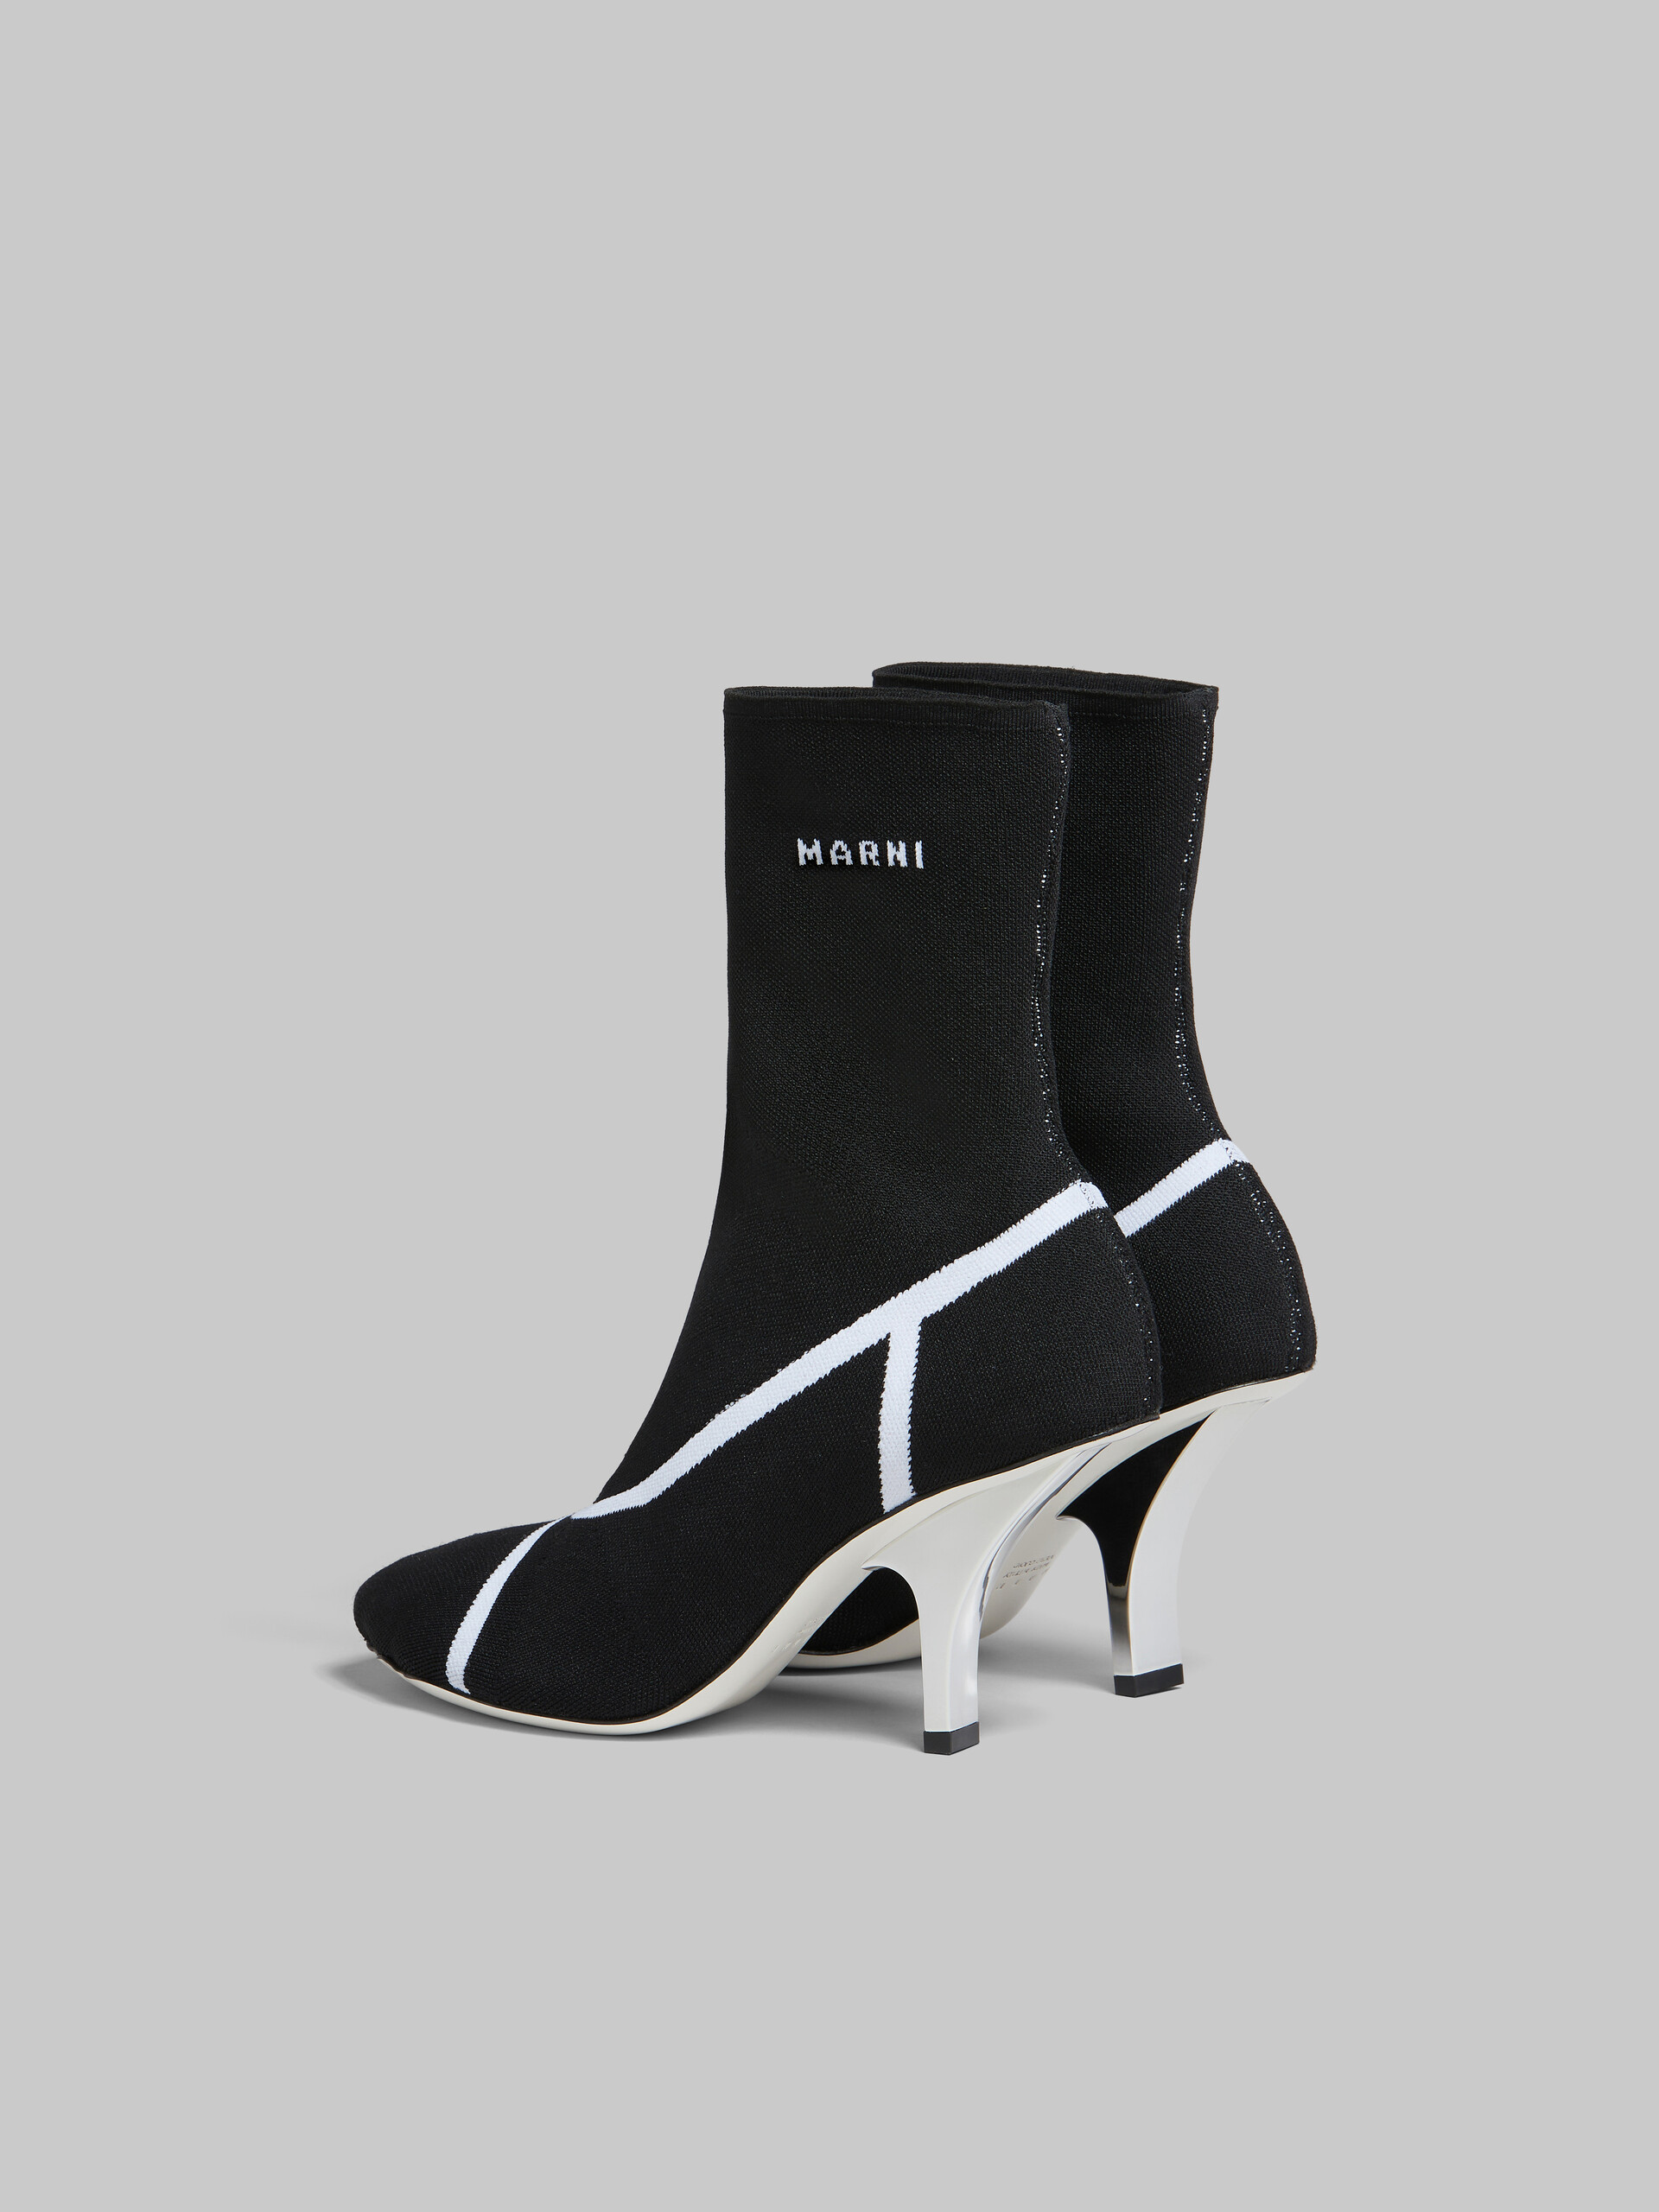 Bottines chaussettes Fancy en maille stretch noire - Bottes - Image 3